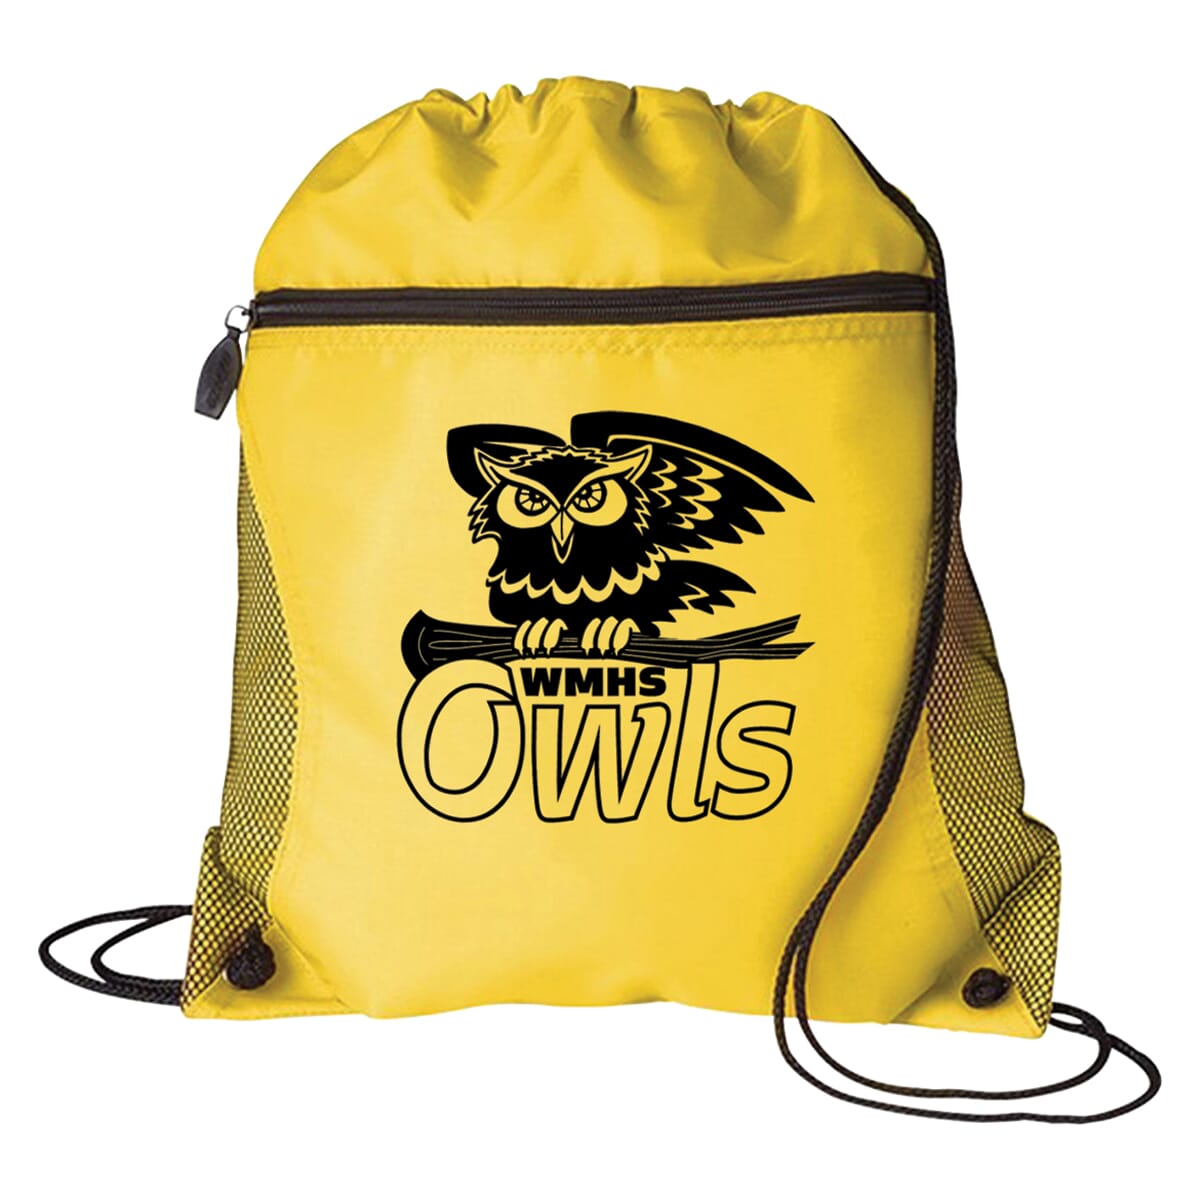 Yellow drawstring bag